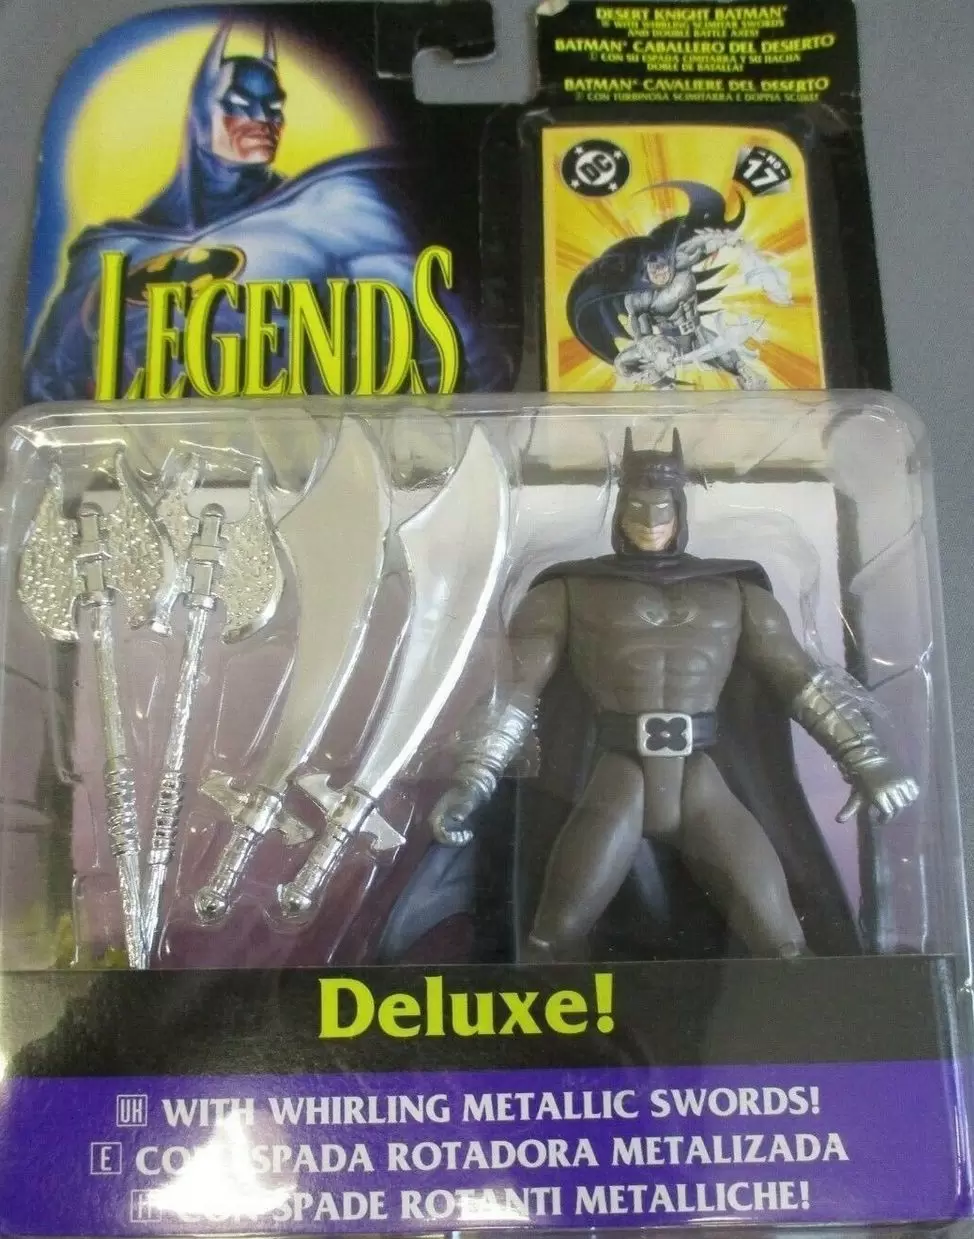 Legends of the Batman - Desert Knight Batman